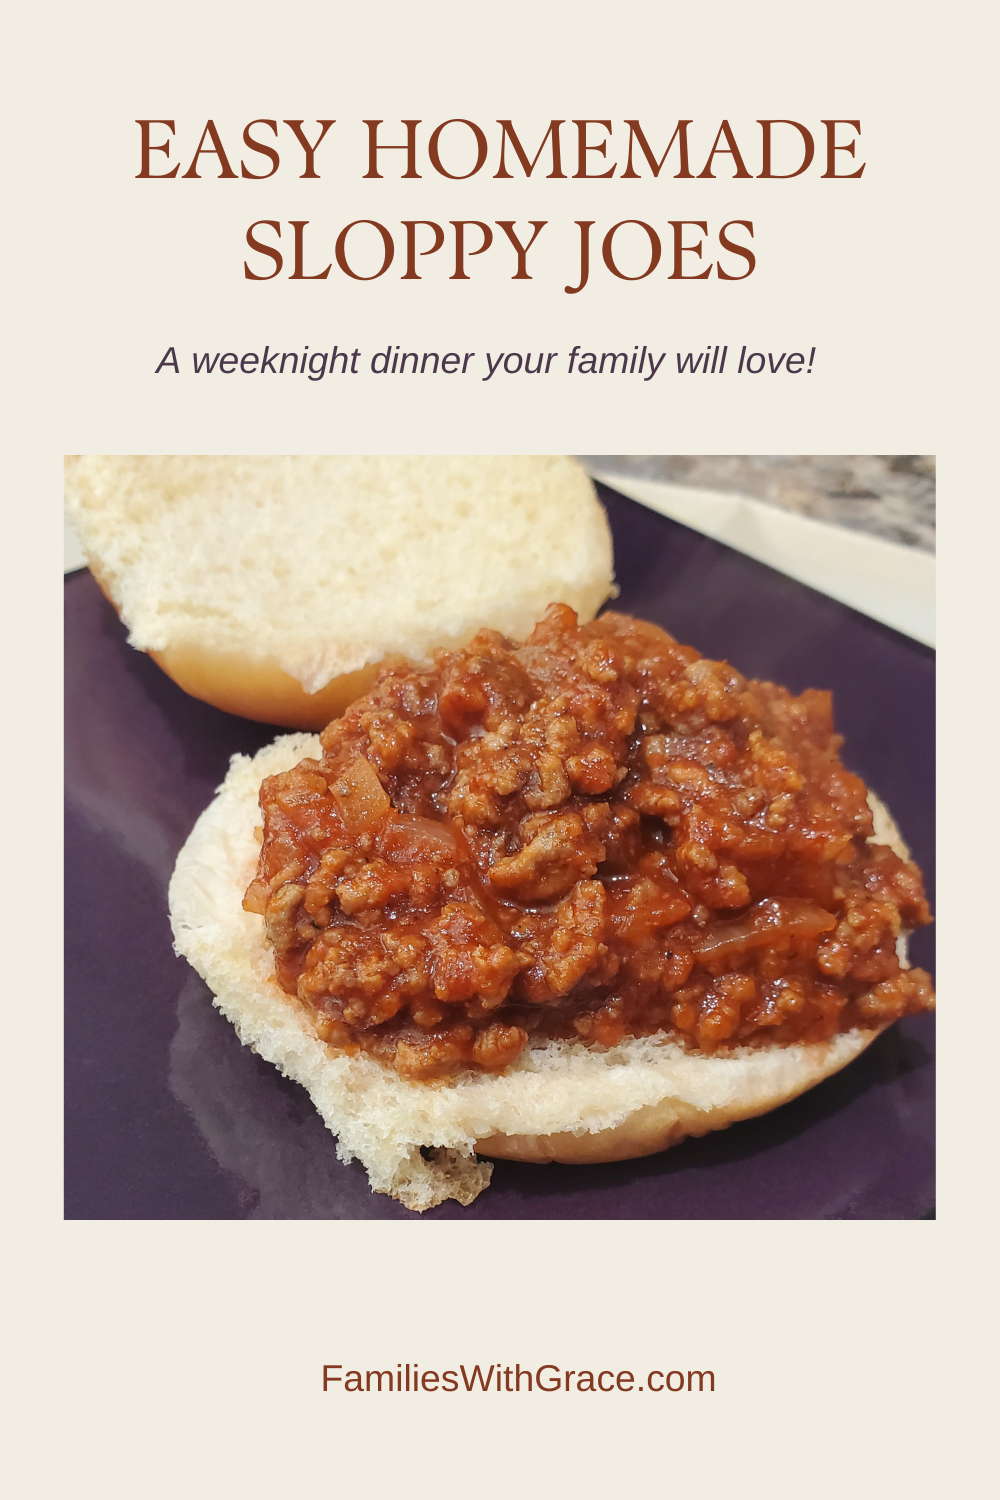 A sloppy joe recipe your family will love